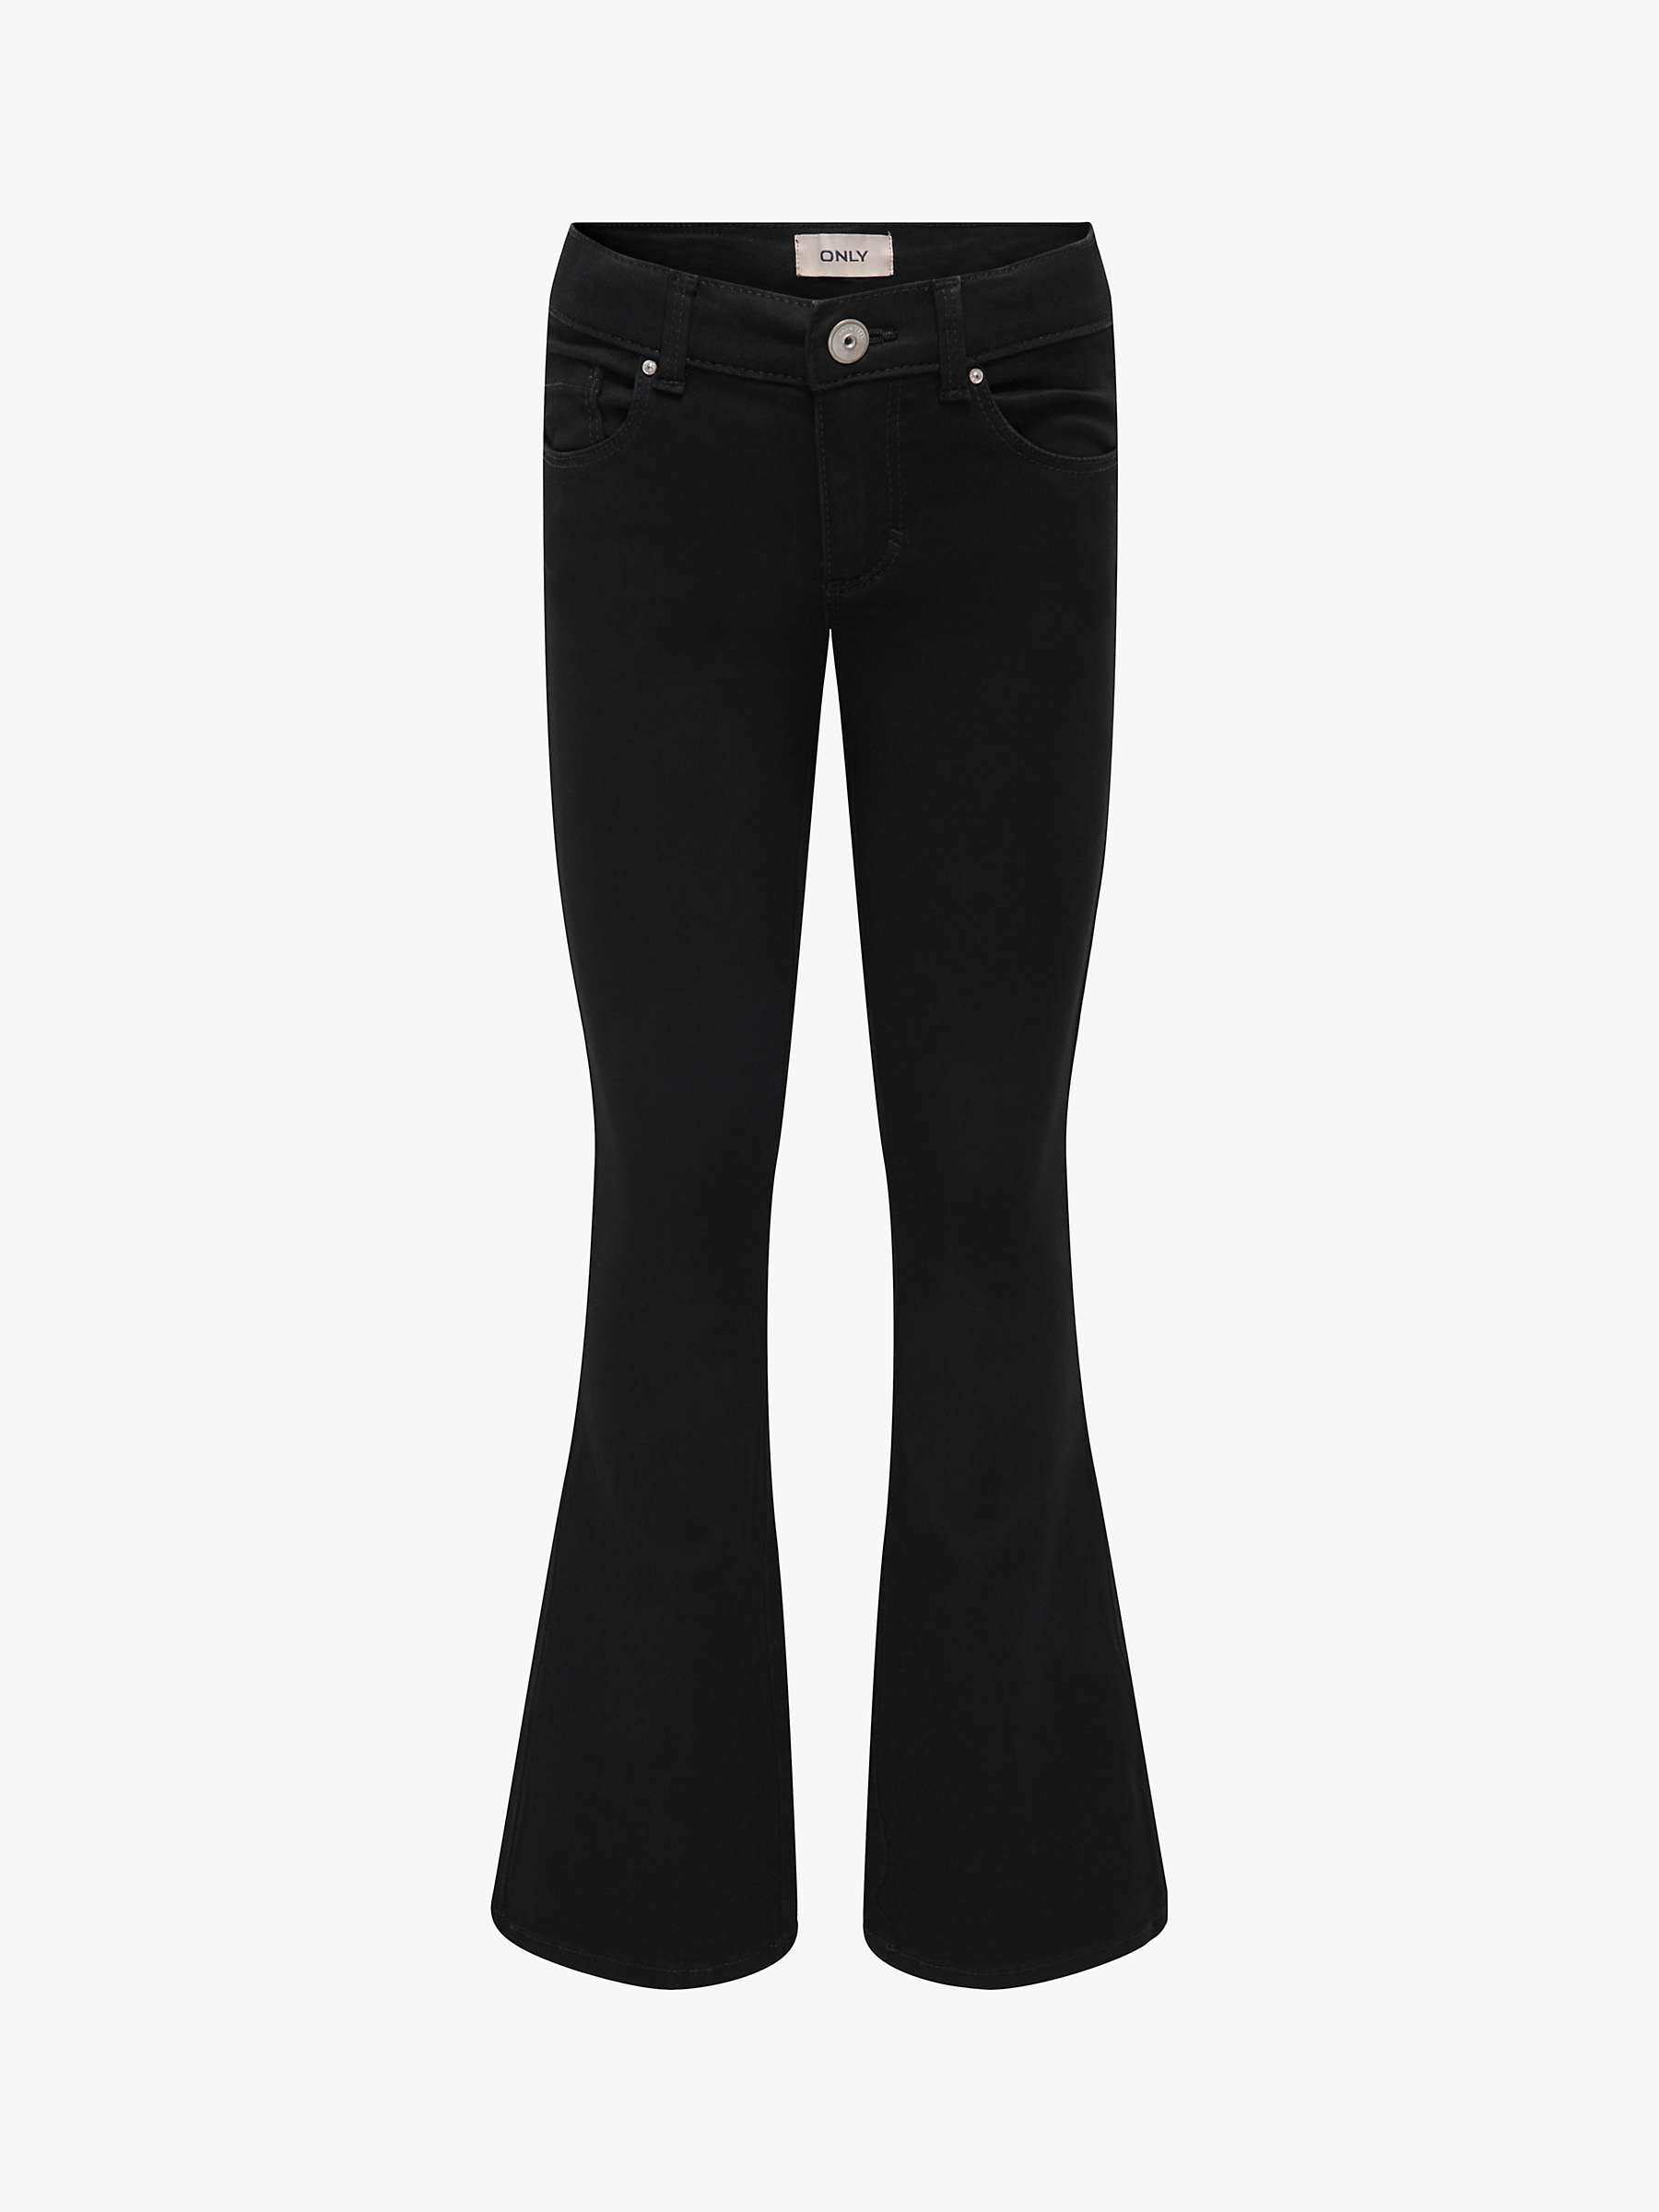 Buy ONLY Kids' Regular Flared Jeans, Black Denim Online at johnlewis.com